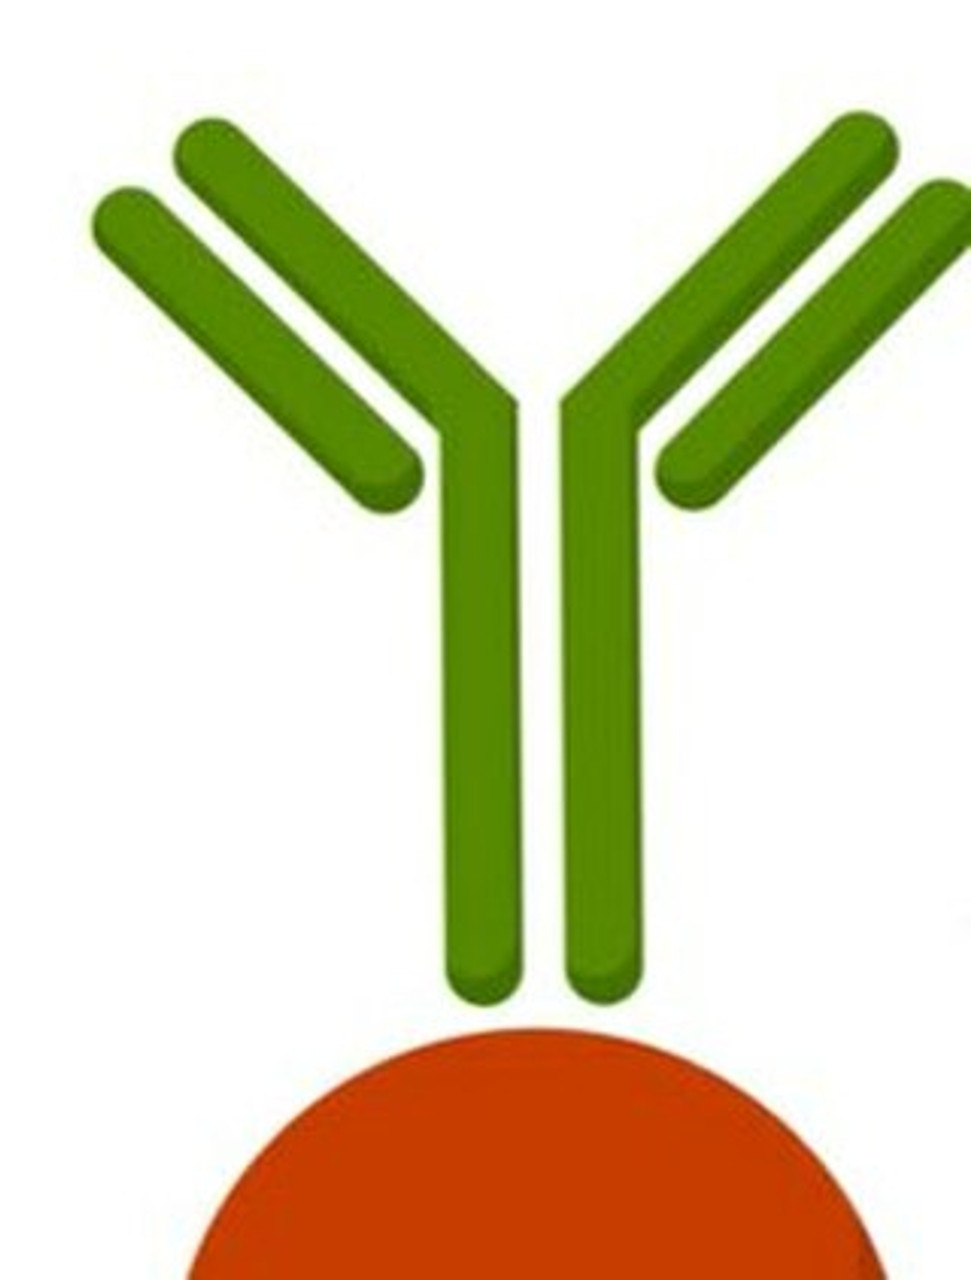 Anti-BCCIP antibody